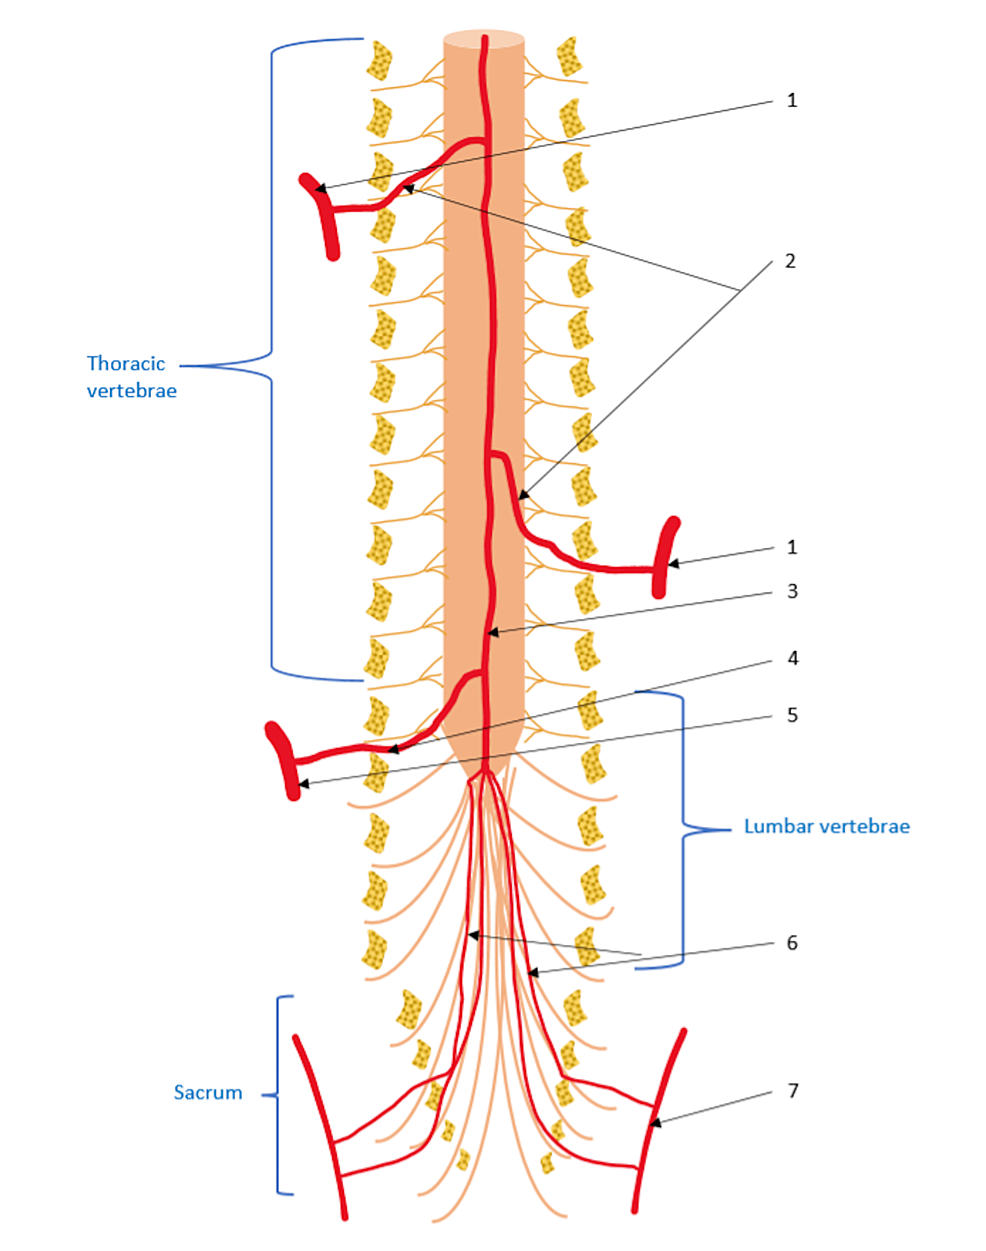 Wzorzec korelacji między segmentalnym uszkodzeniem tętnic a całkowitym zaburzeniem neurologicznym po urazie rdzenia kręgowego: badanie kliniczno-kontrolne